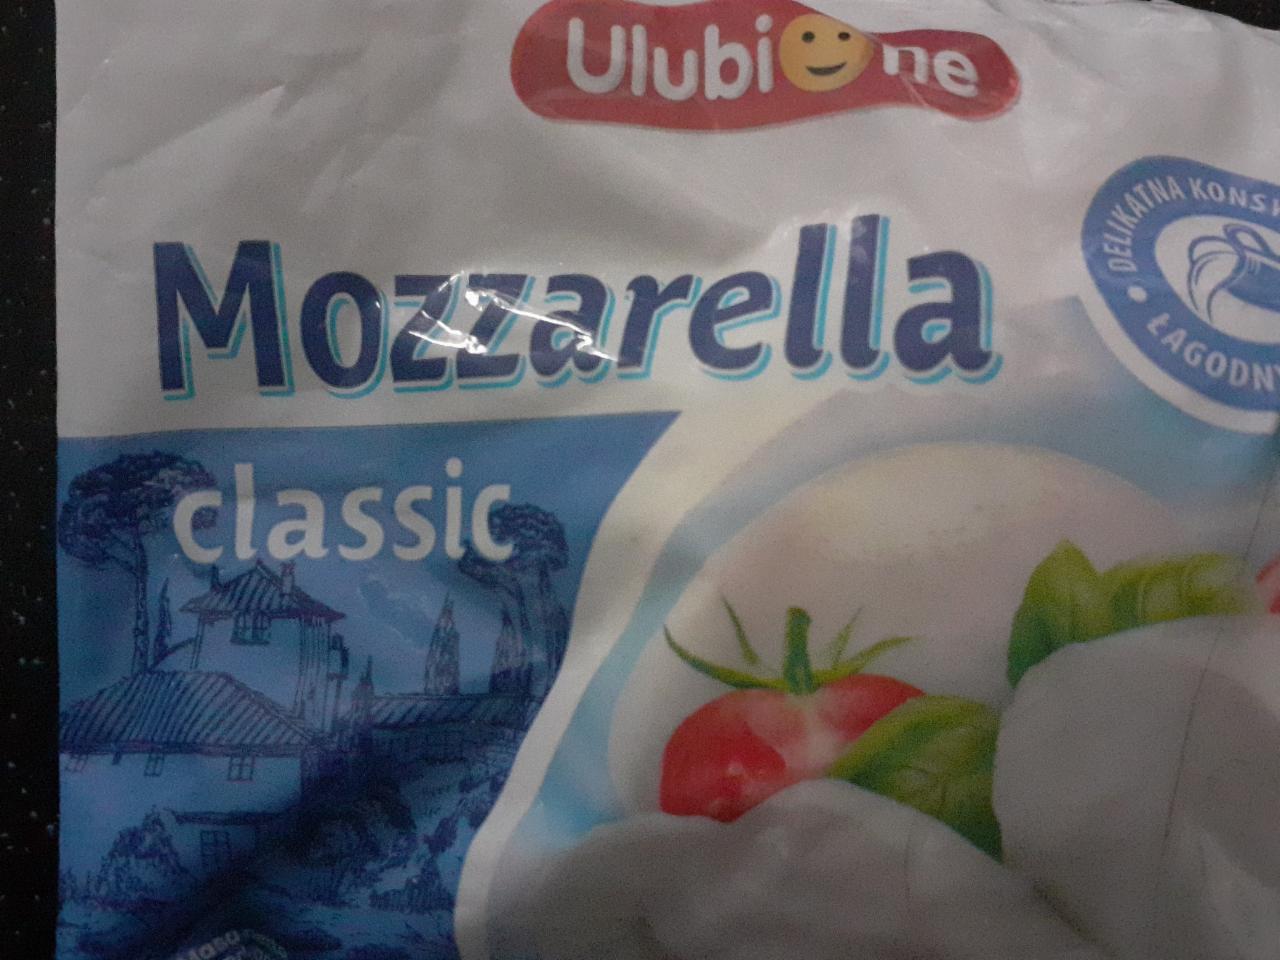 Zdjęcia - mozzarella classic Ulubione